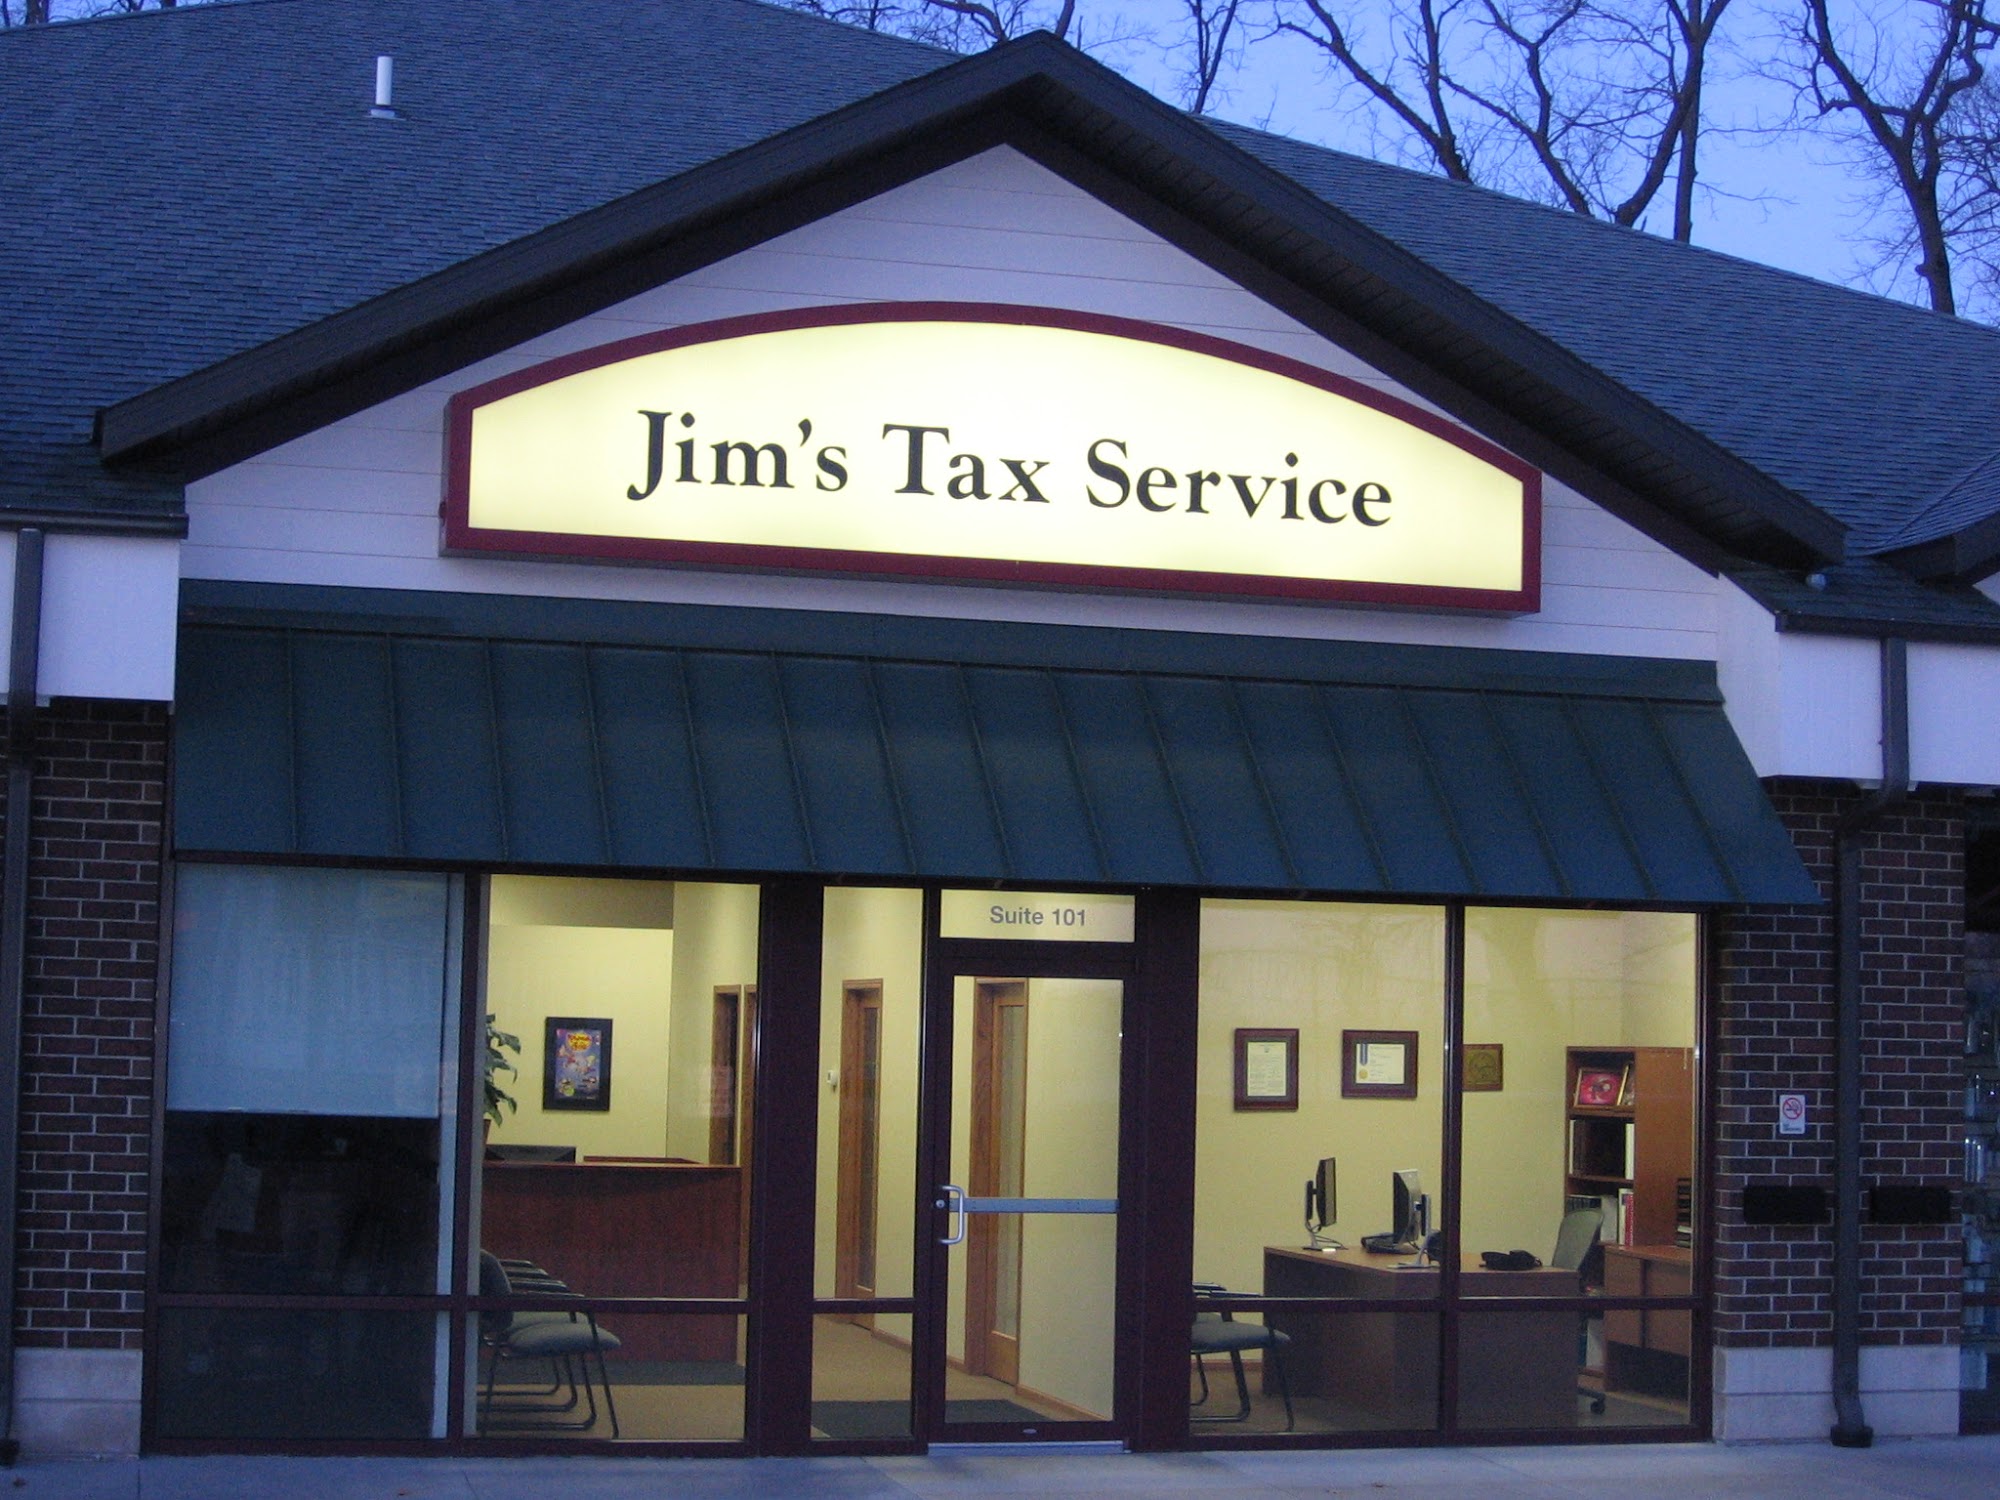 Jim's Tax Service